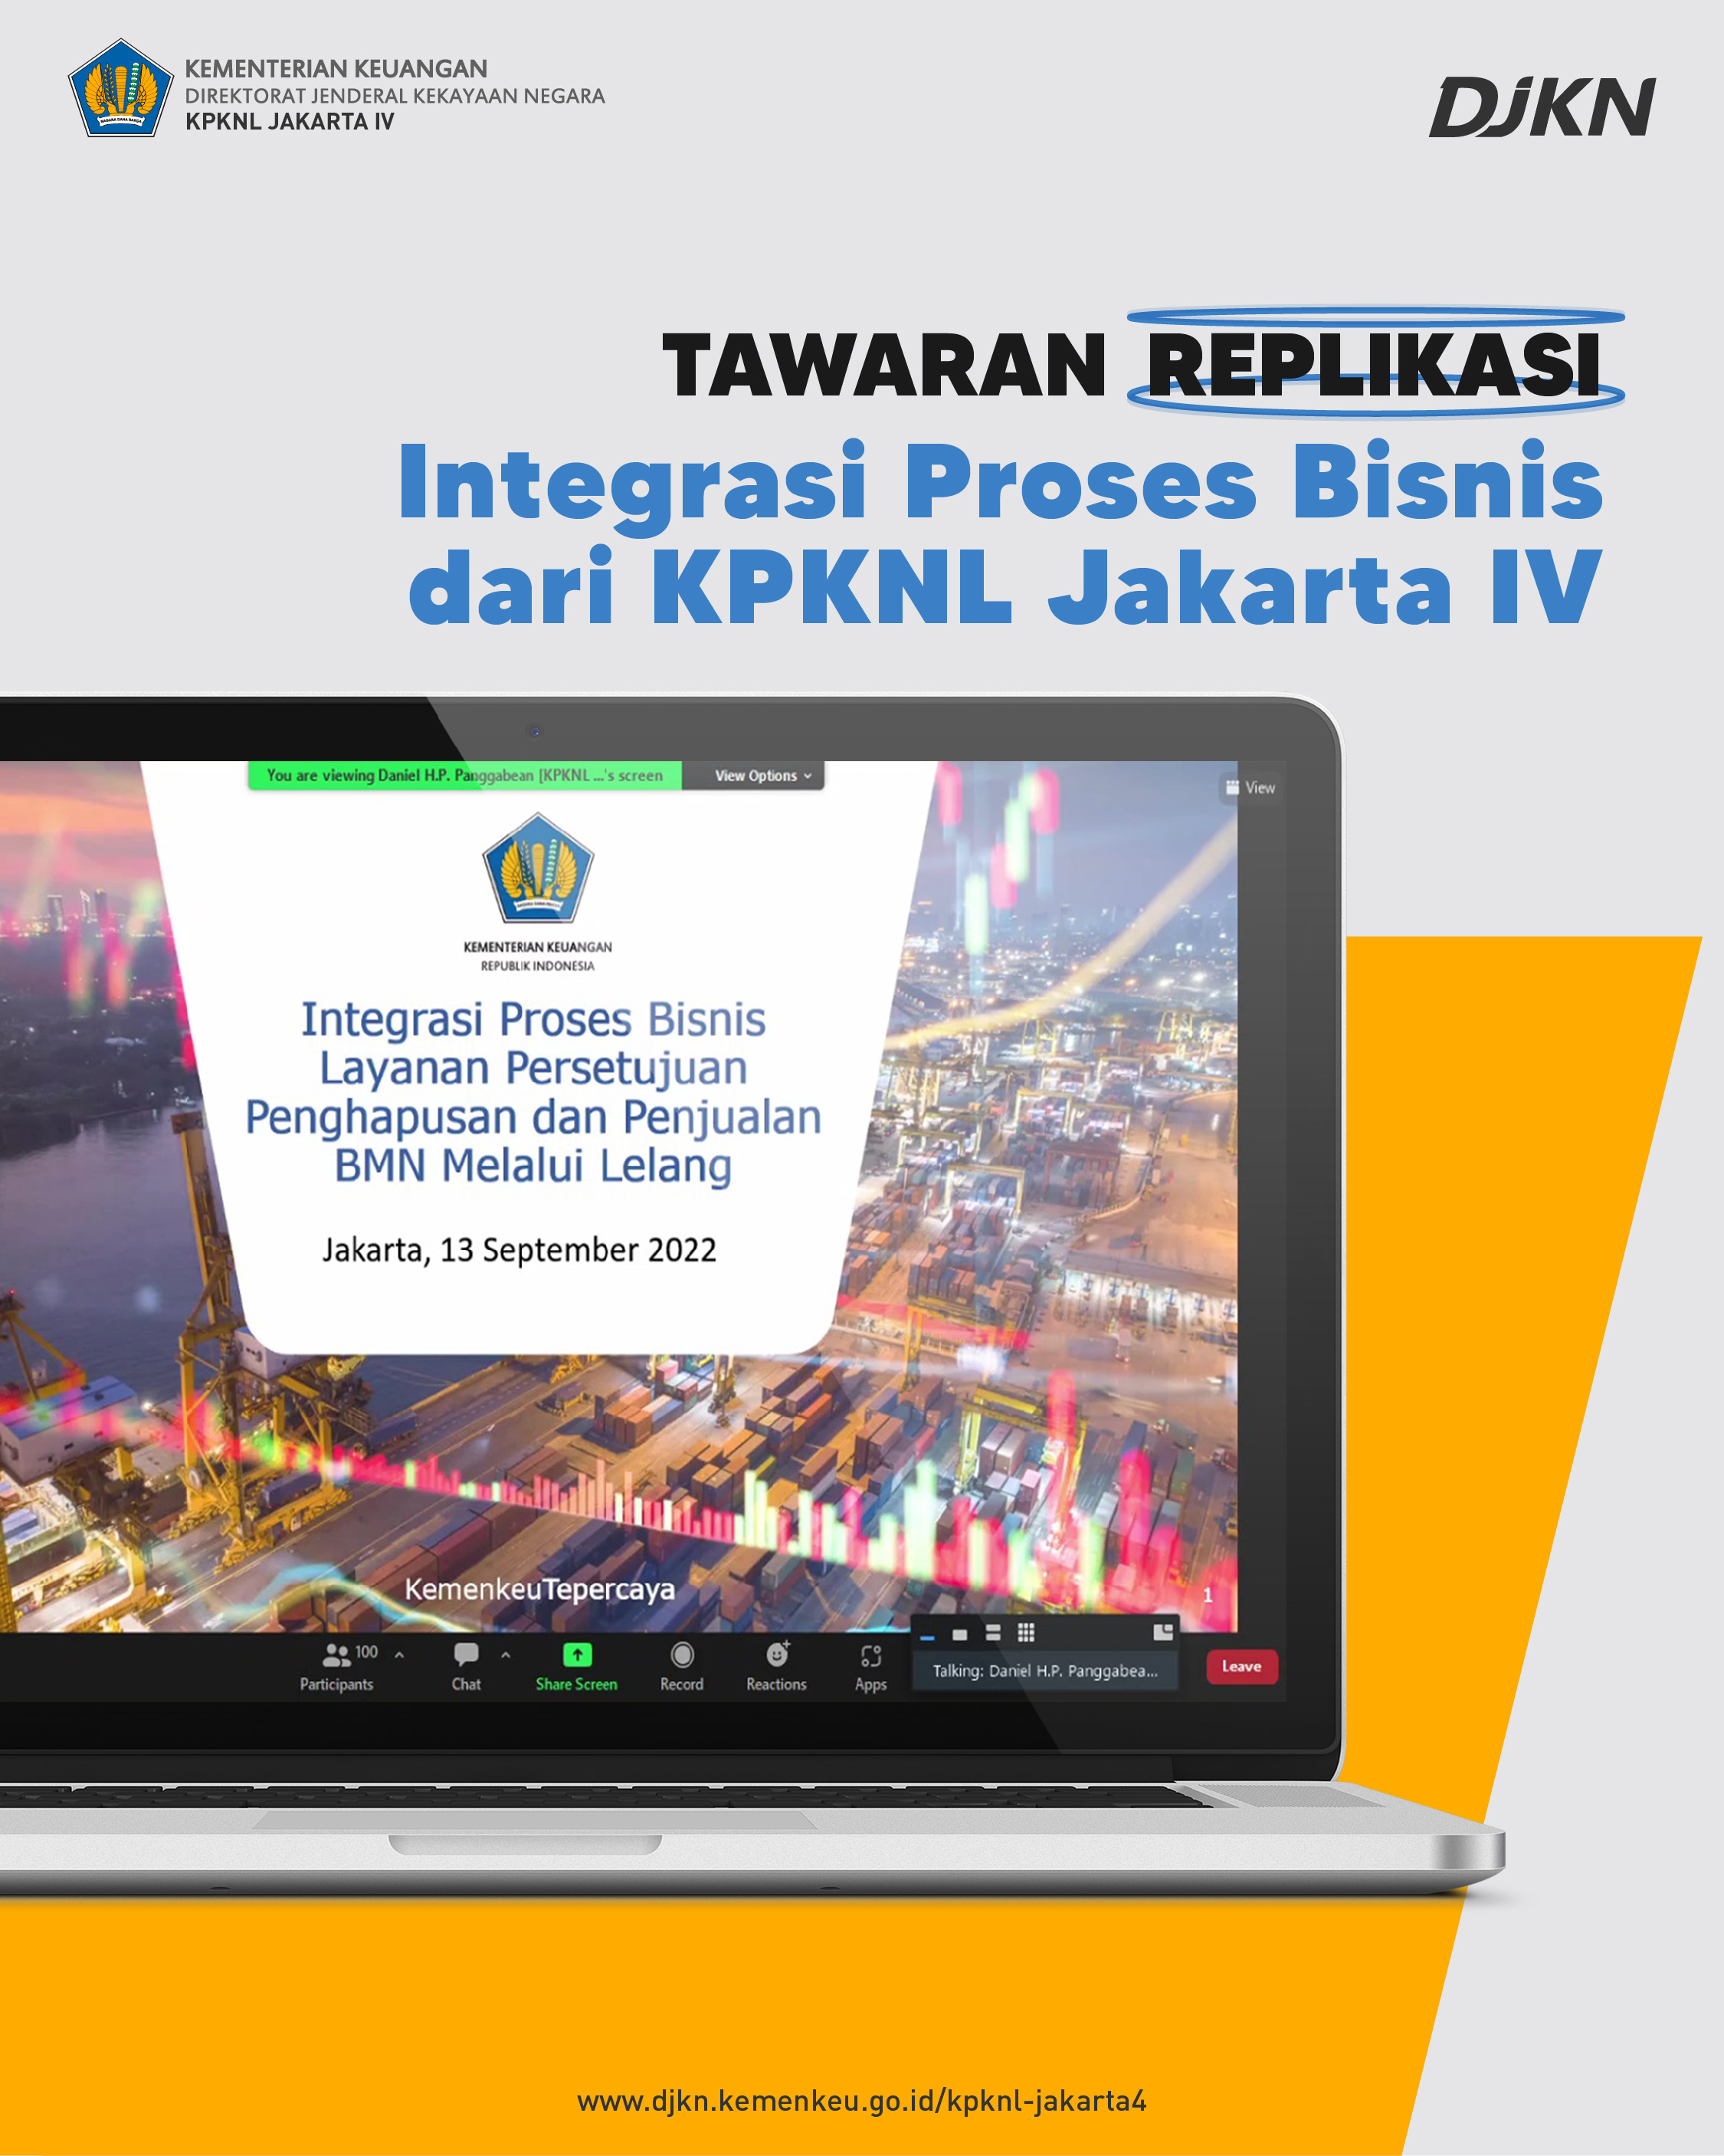 Penawaran Replikasi Inovasi dari KPKNL Jakarta IV